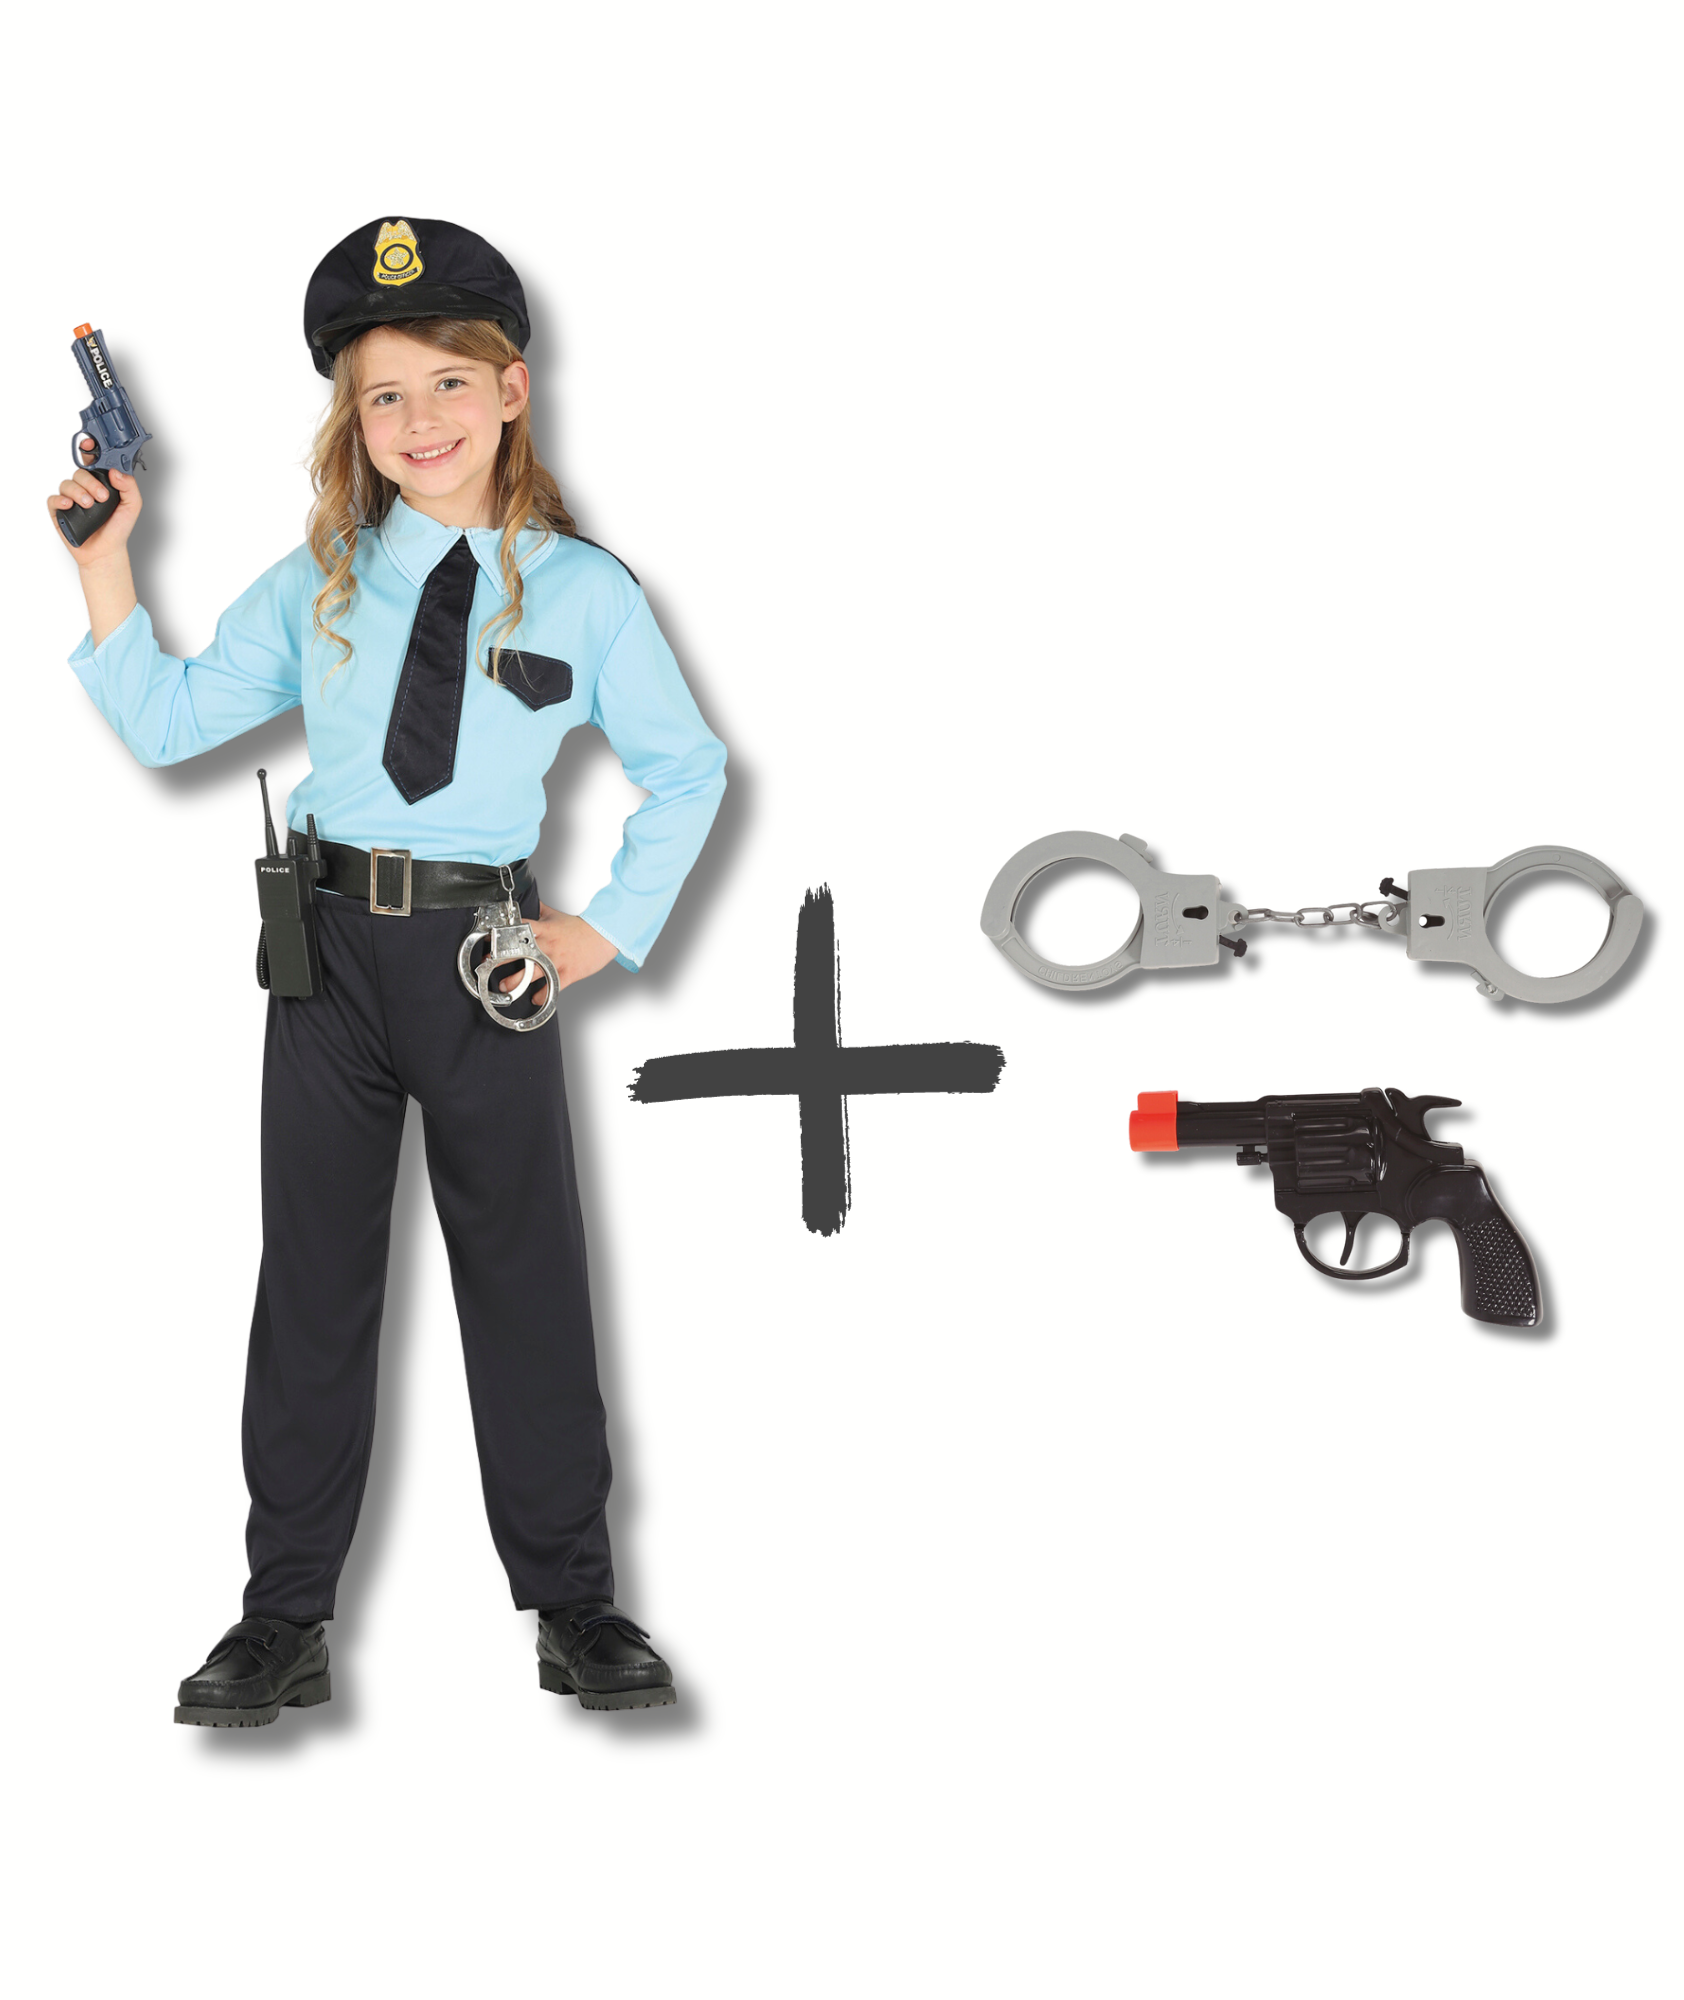 E-shop HeliumKing Detský kostým set - Policajt s pištoľou a putami - veľkosť M